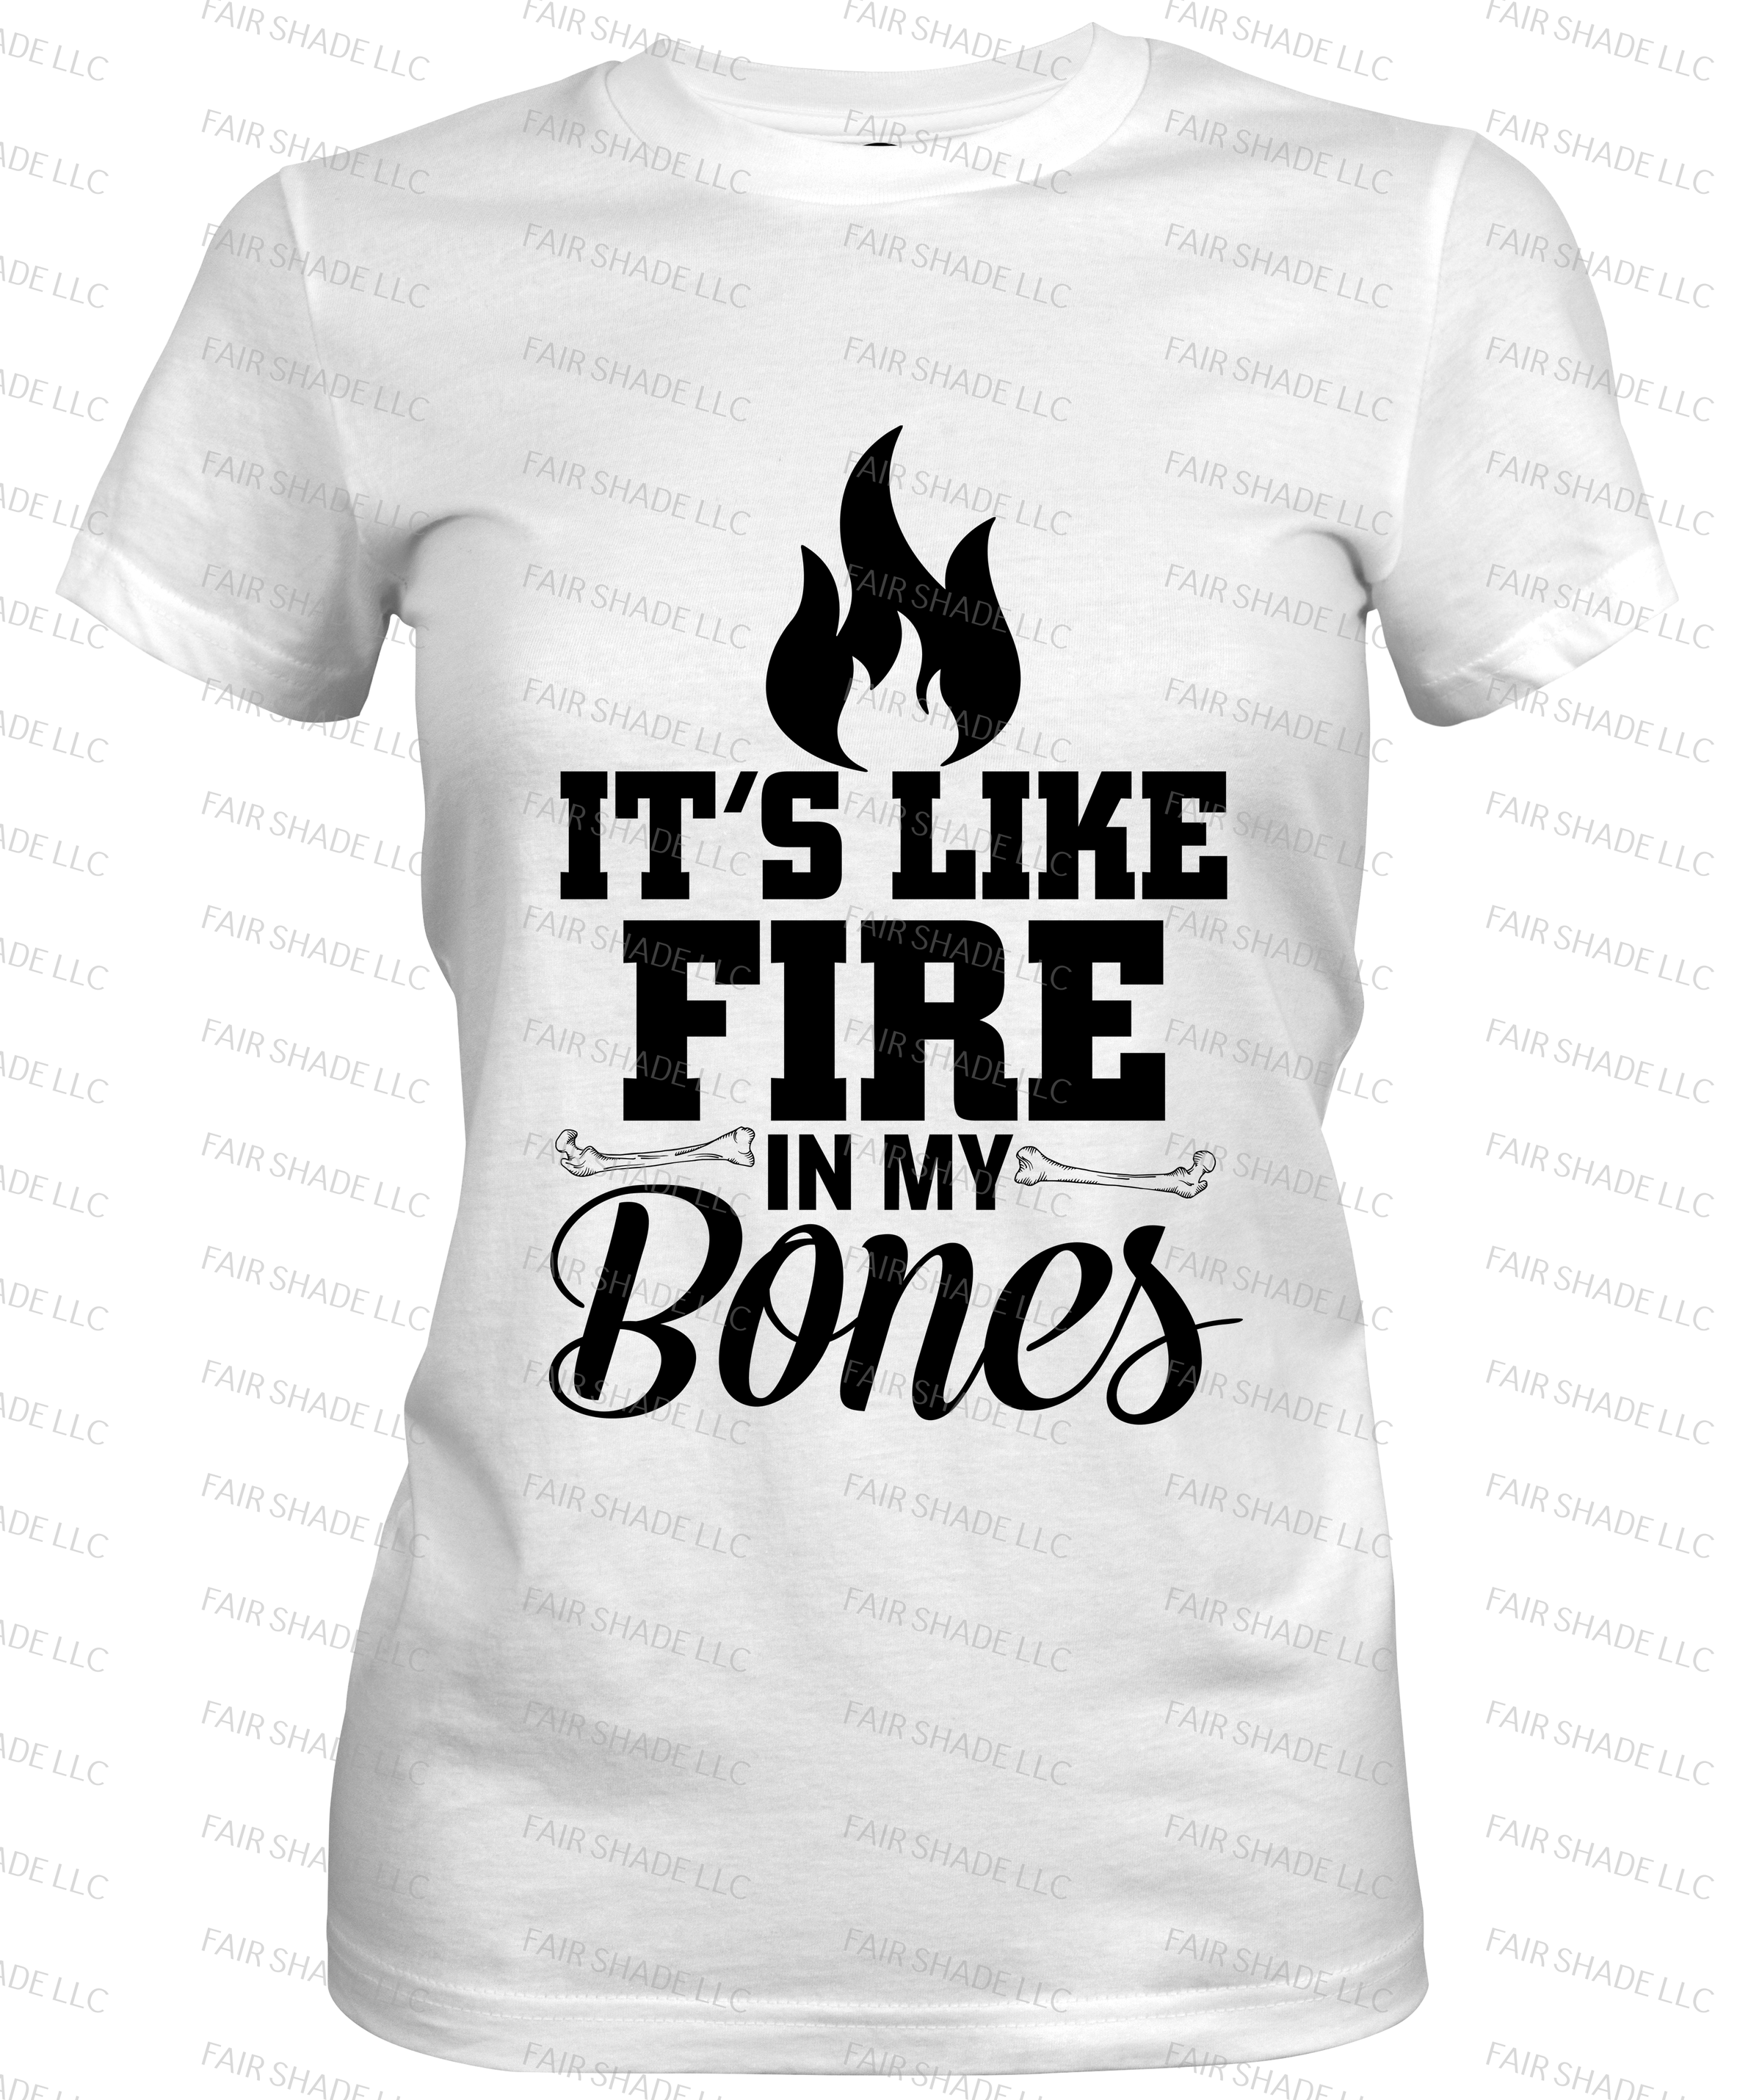 Fire In My Bones T Shirt Clothing Fair Shade LLC SMALL WHITE 